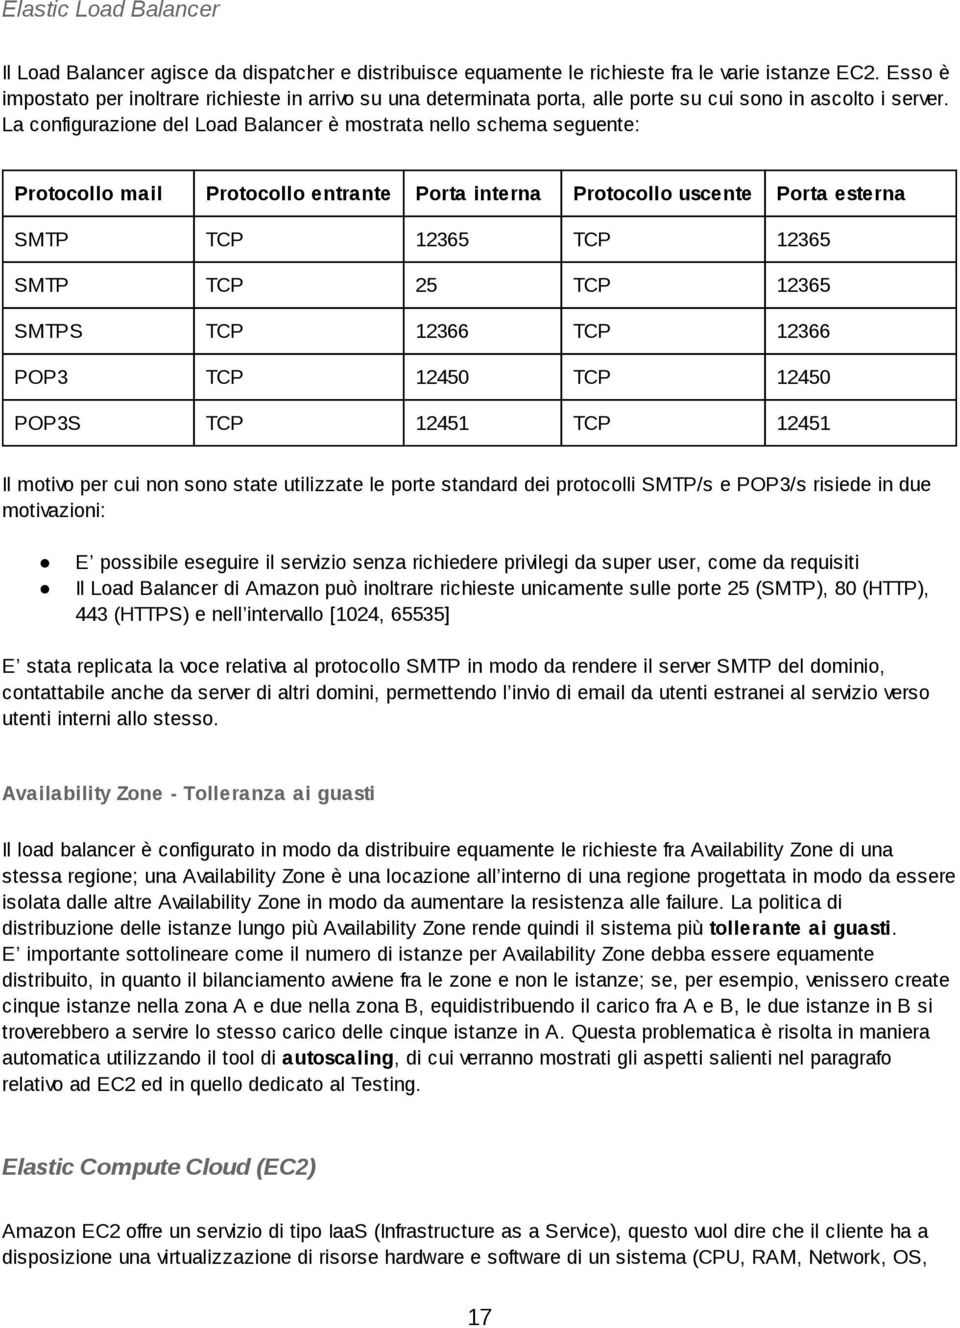 La configurazione del Load Balancer è mostrata nello schema seguente: Protocollo mail Protocollo entrante Porta interna Protocollo uscente Porta esterna SMTP TCP 12365 TCP 12365 SMTP TCP 25 TCP 12365